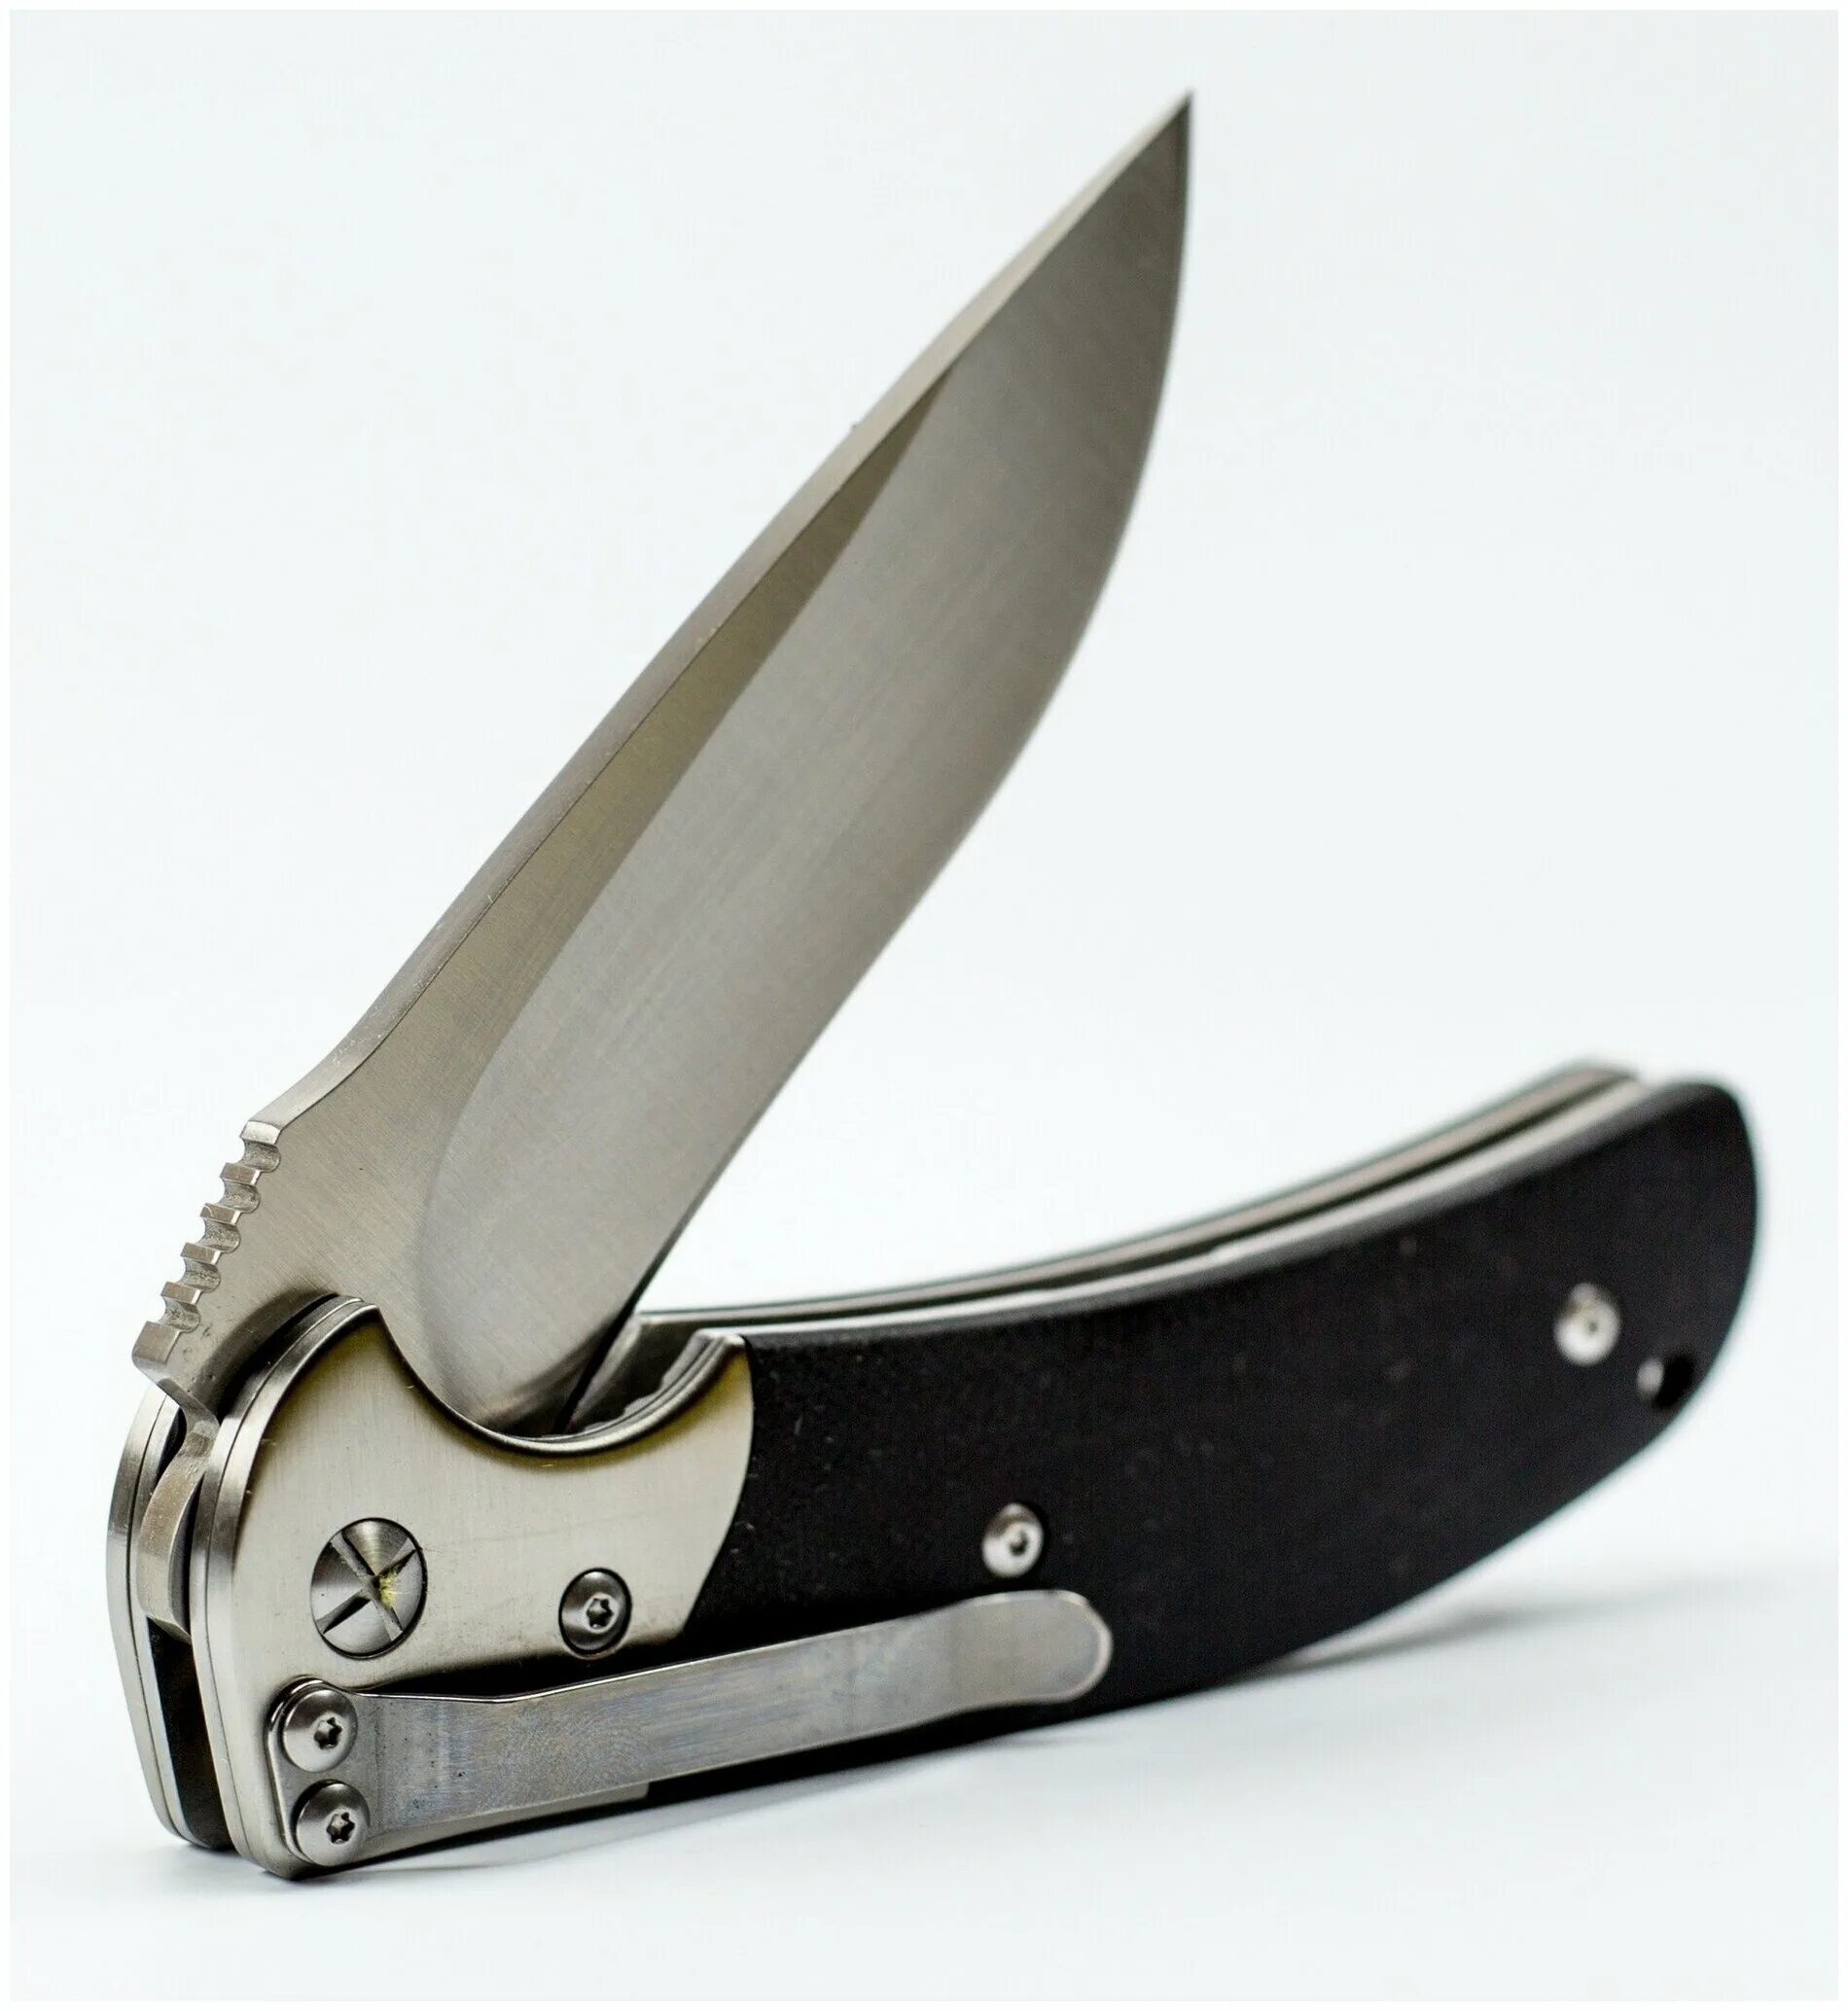 Нож Steelclaw Резервист. Складной нож "Резервист" сталь d2, рукоять g10. Складной нож Steelclaw. Складной нож Резервист, сталь d2,. Нож раскладушка